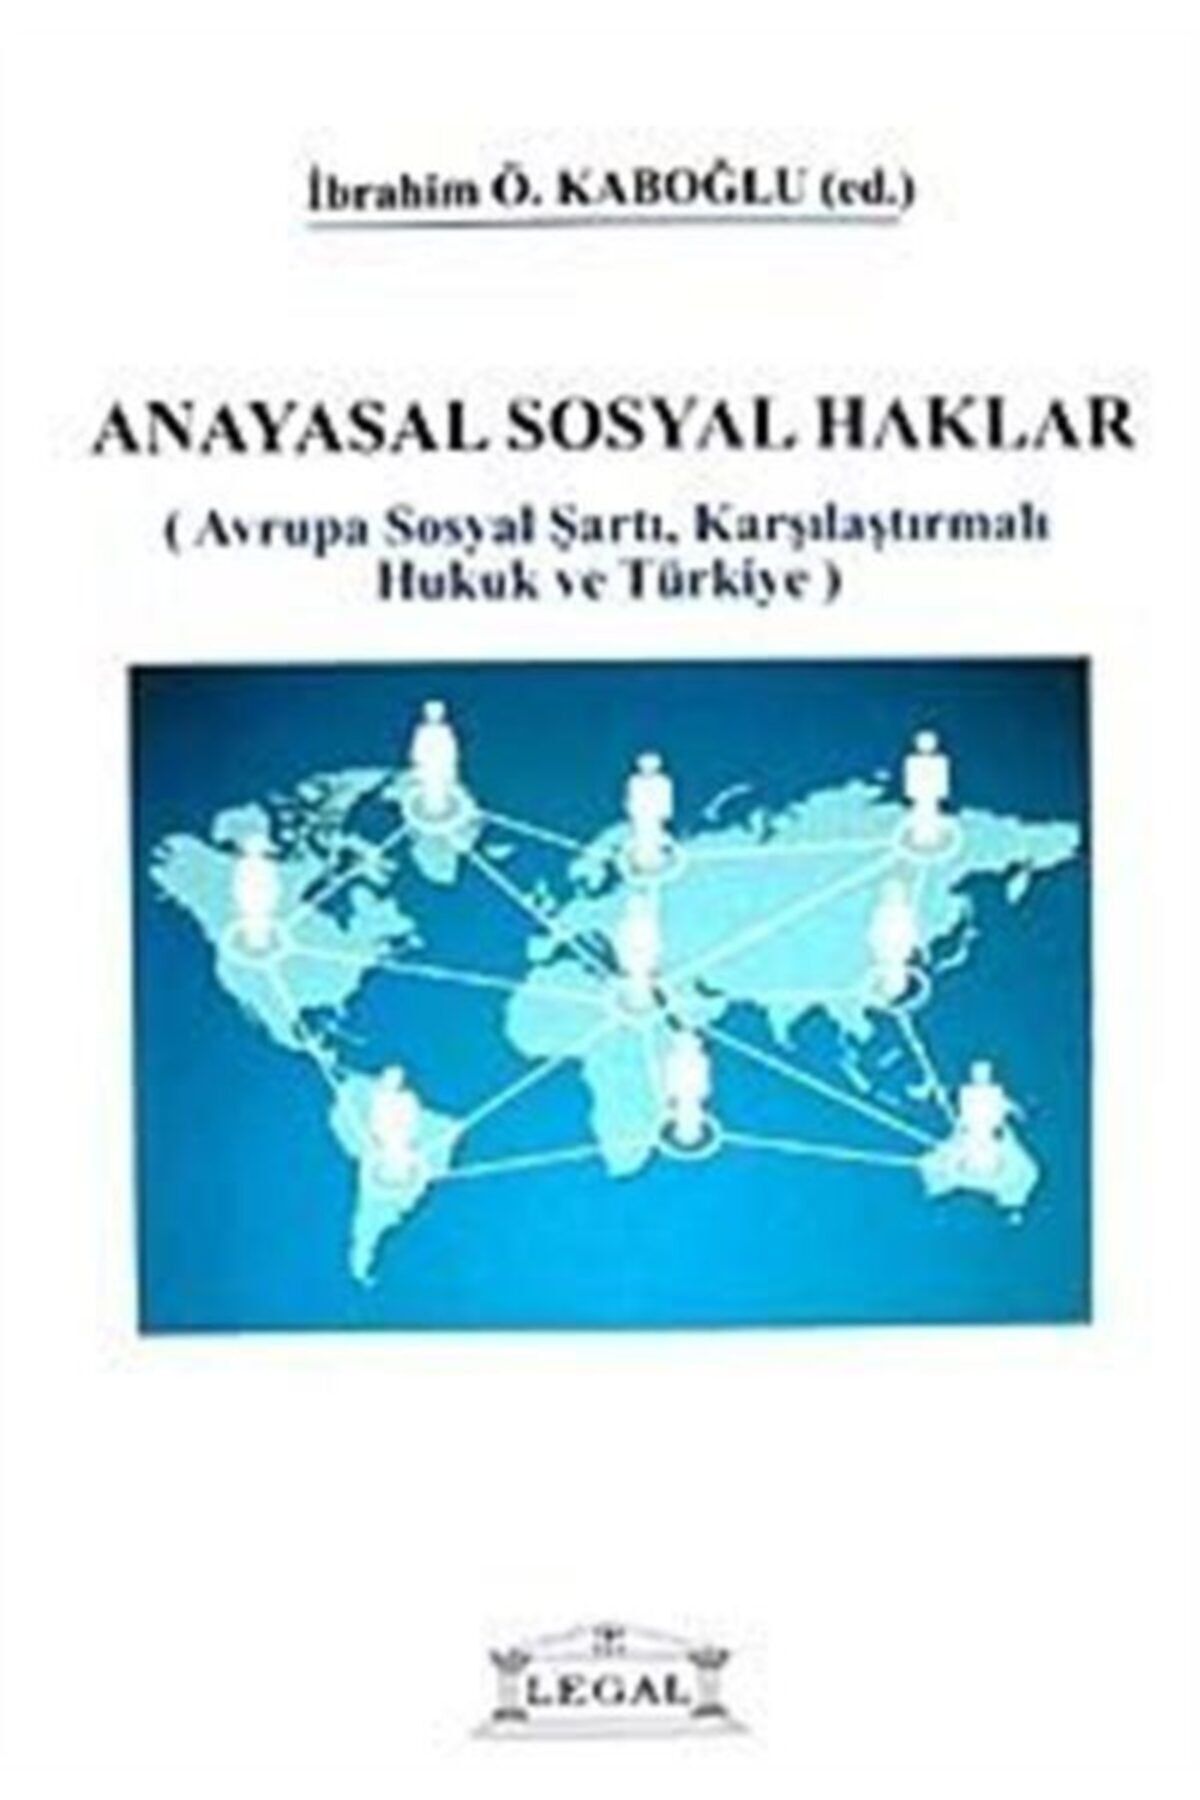 Legal Yayıncılık Anayasal Sosyal Haklar & Avrupa Sosyal Şartı, Karşılaştırmalı Hukuk Ve Türkiye